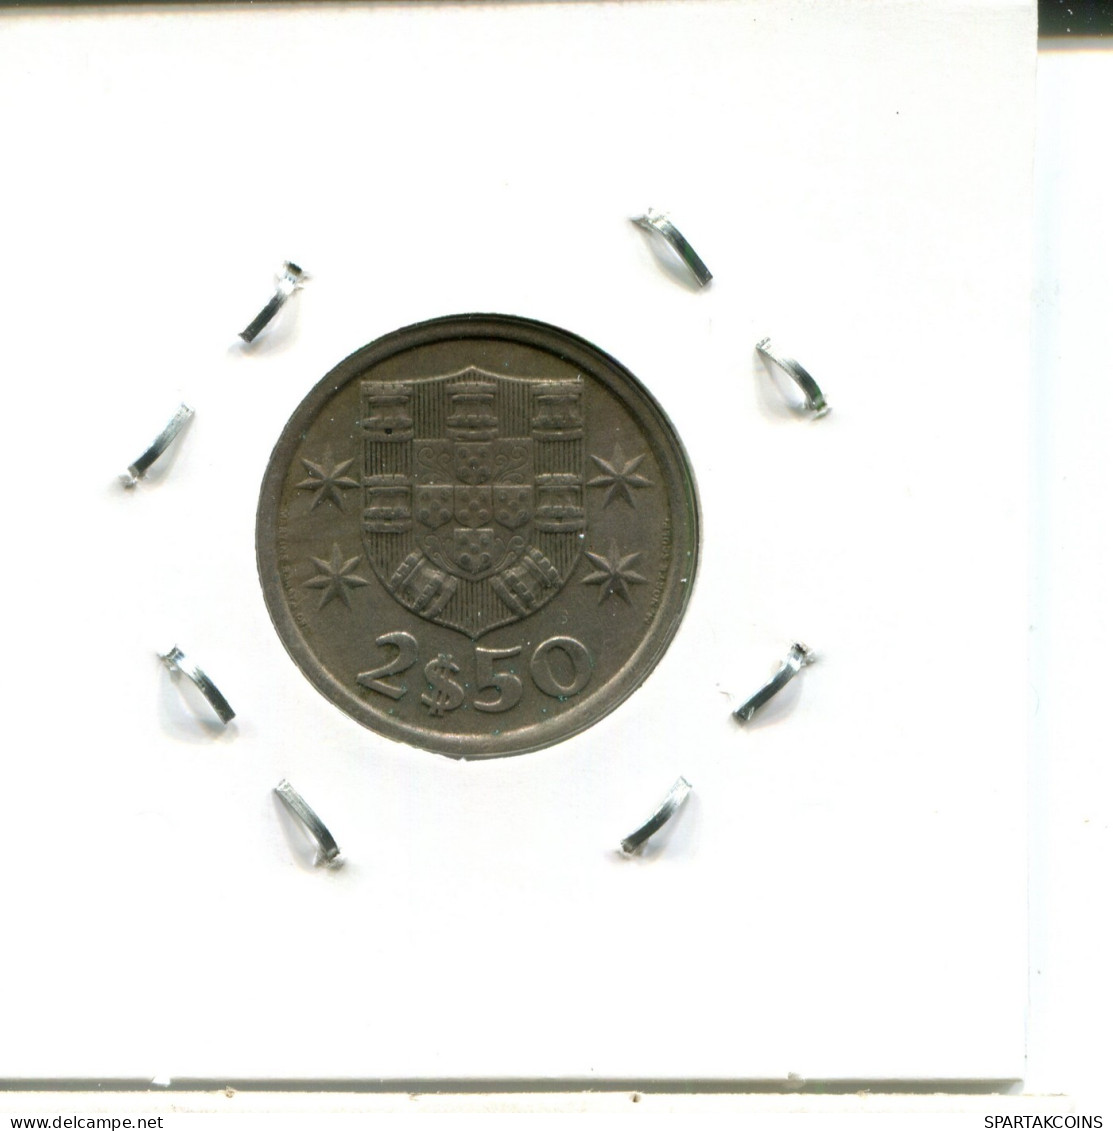 2$50 ESCUDOS 1972 PORTUGAL Coin #AW841.U.A - Portugal